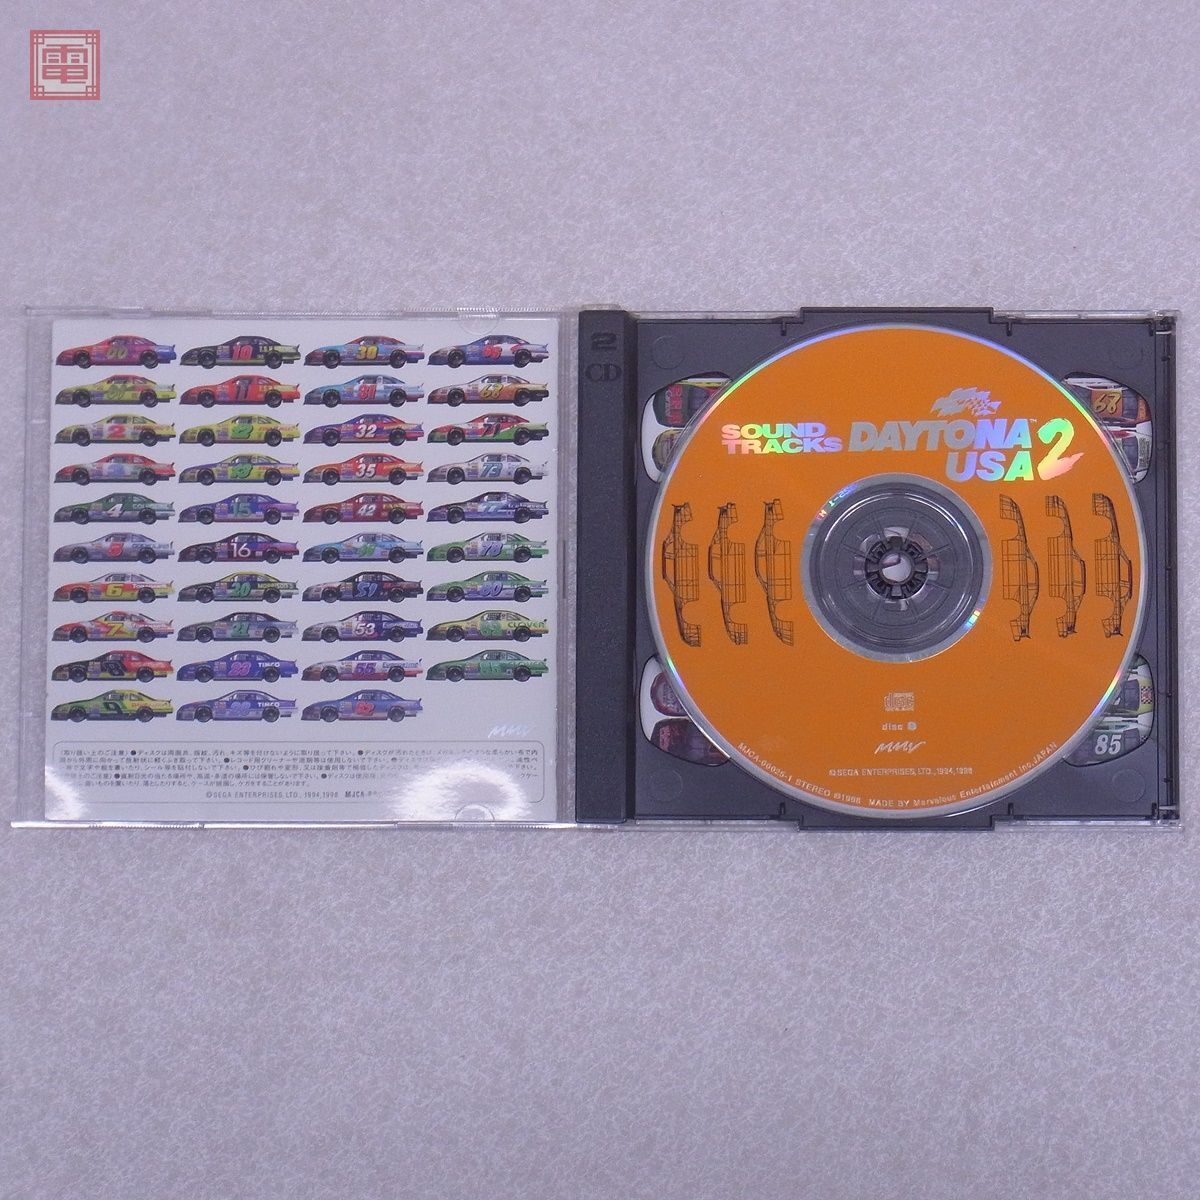  гарантия работы товар CD Daytona USA / 2 саундтрек 3 позиций комплект DAYTONA USA circuit выпуск B-univ и т.п. Sega SEGA[10